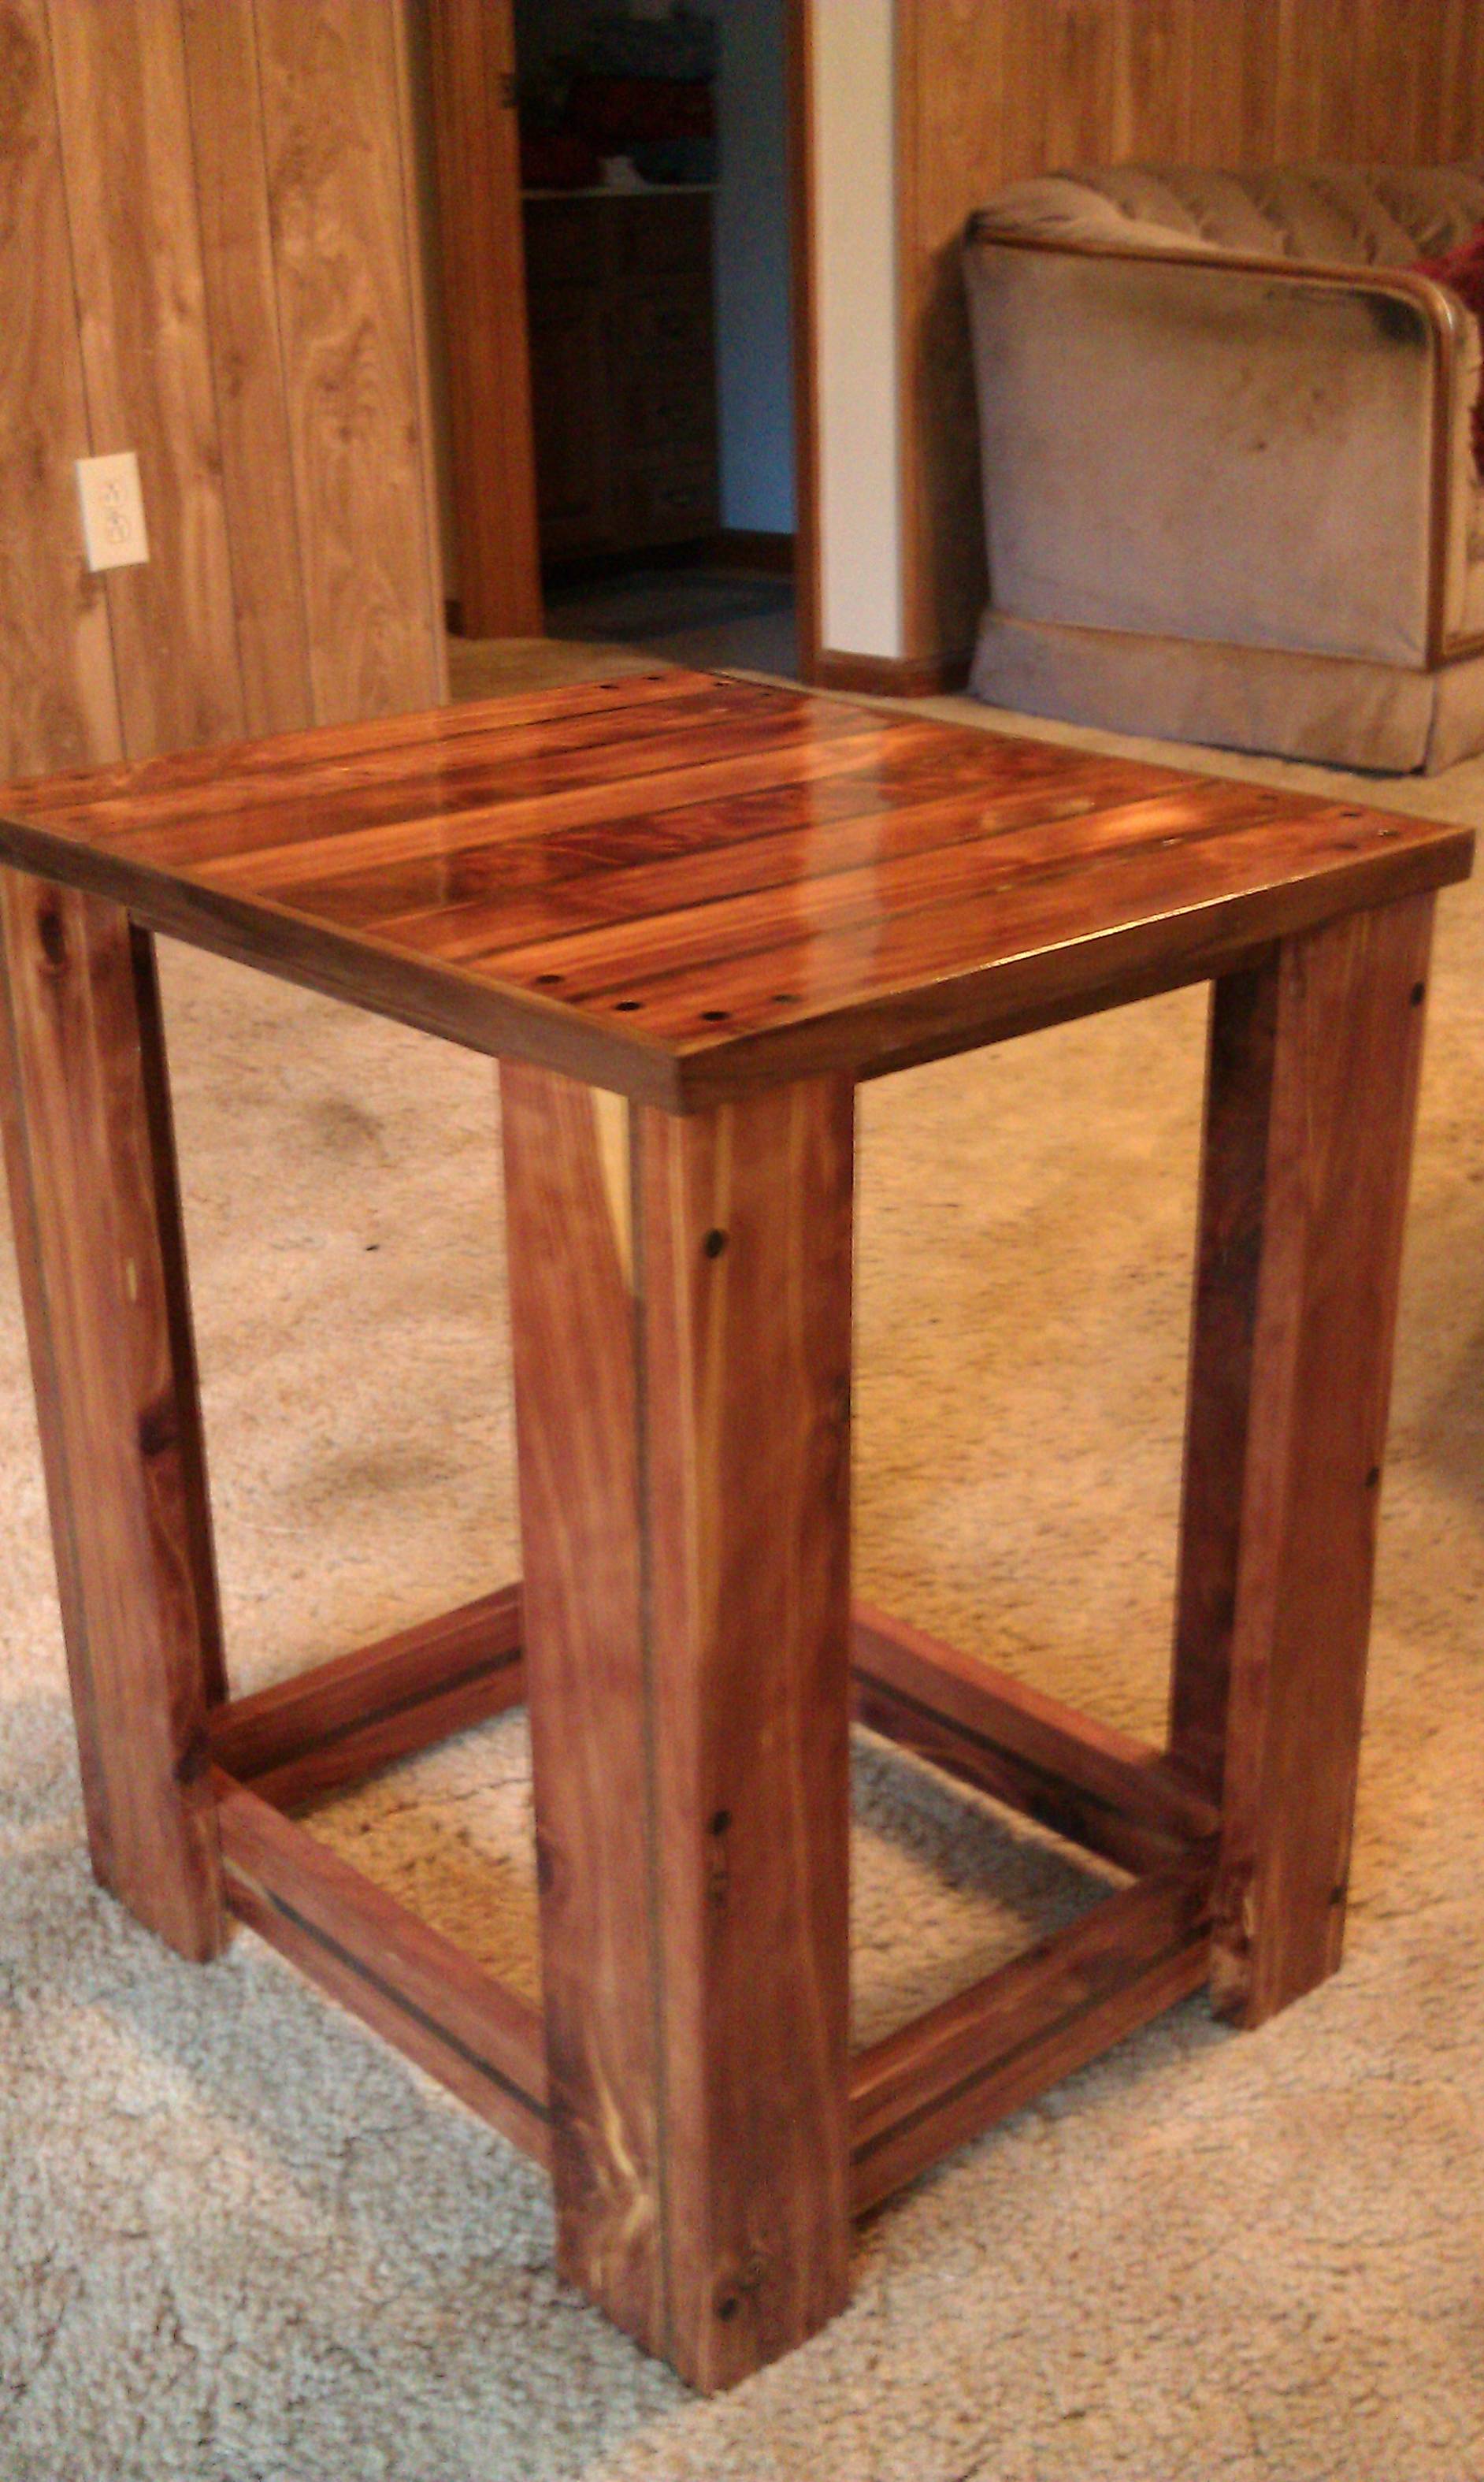 Cedar and Walnut end table